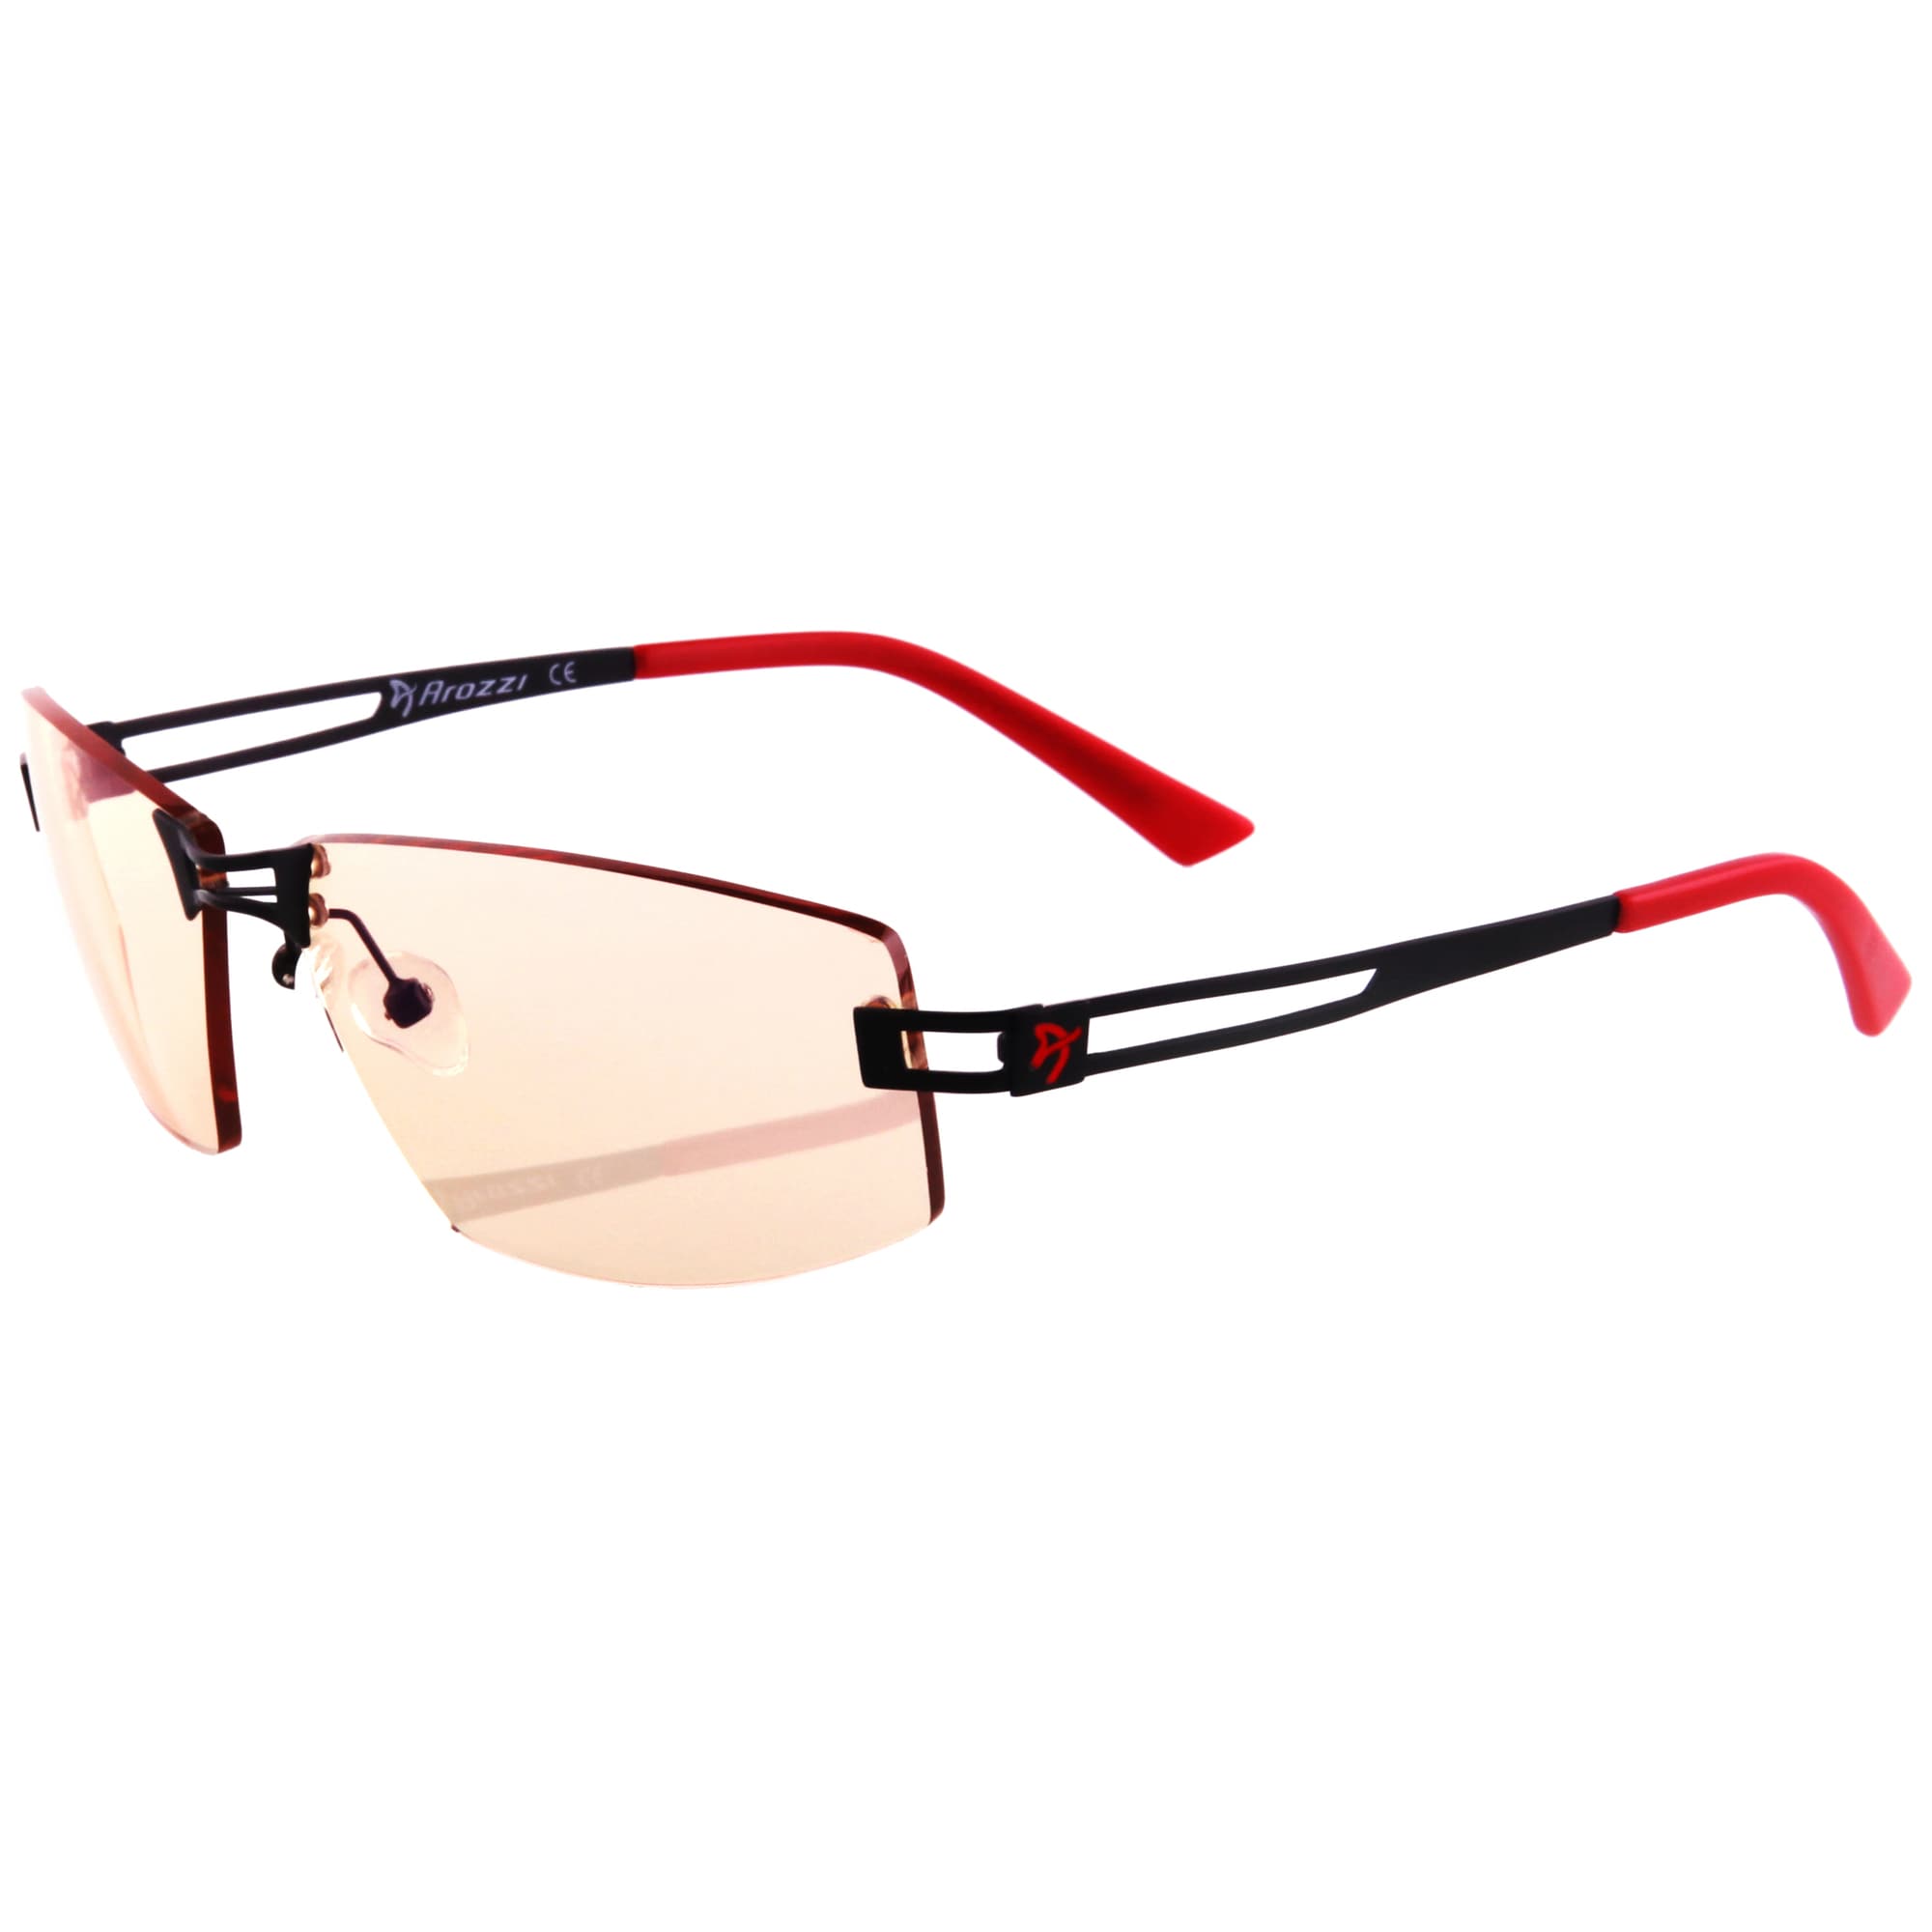 Arozzi Visione VX600 lasit (musta/punainen) - Gigantti verkkokauppa